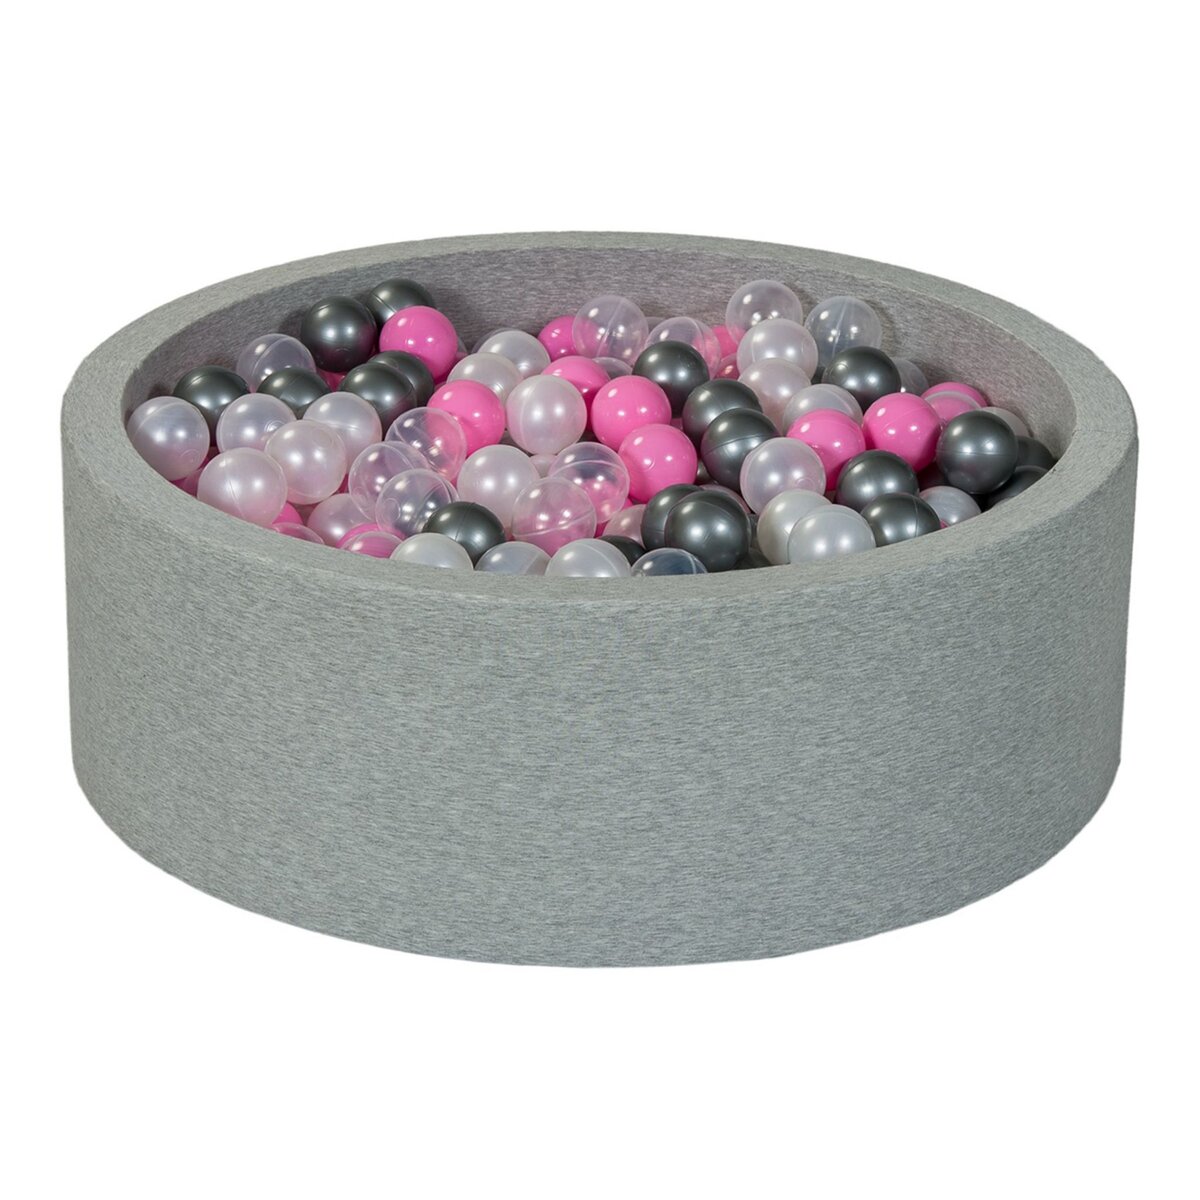  Piscine à balles Aire de jeu + 450 balles perle, transparent, rose clair, argent